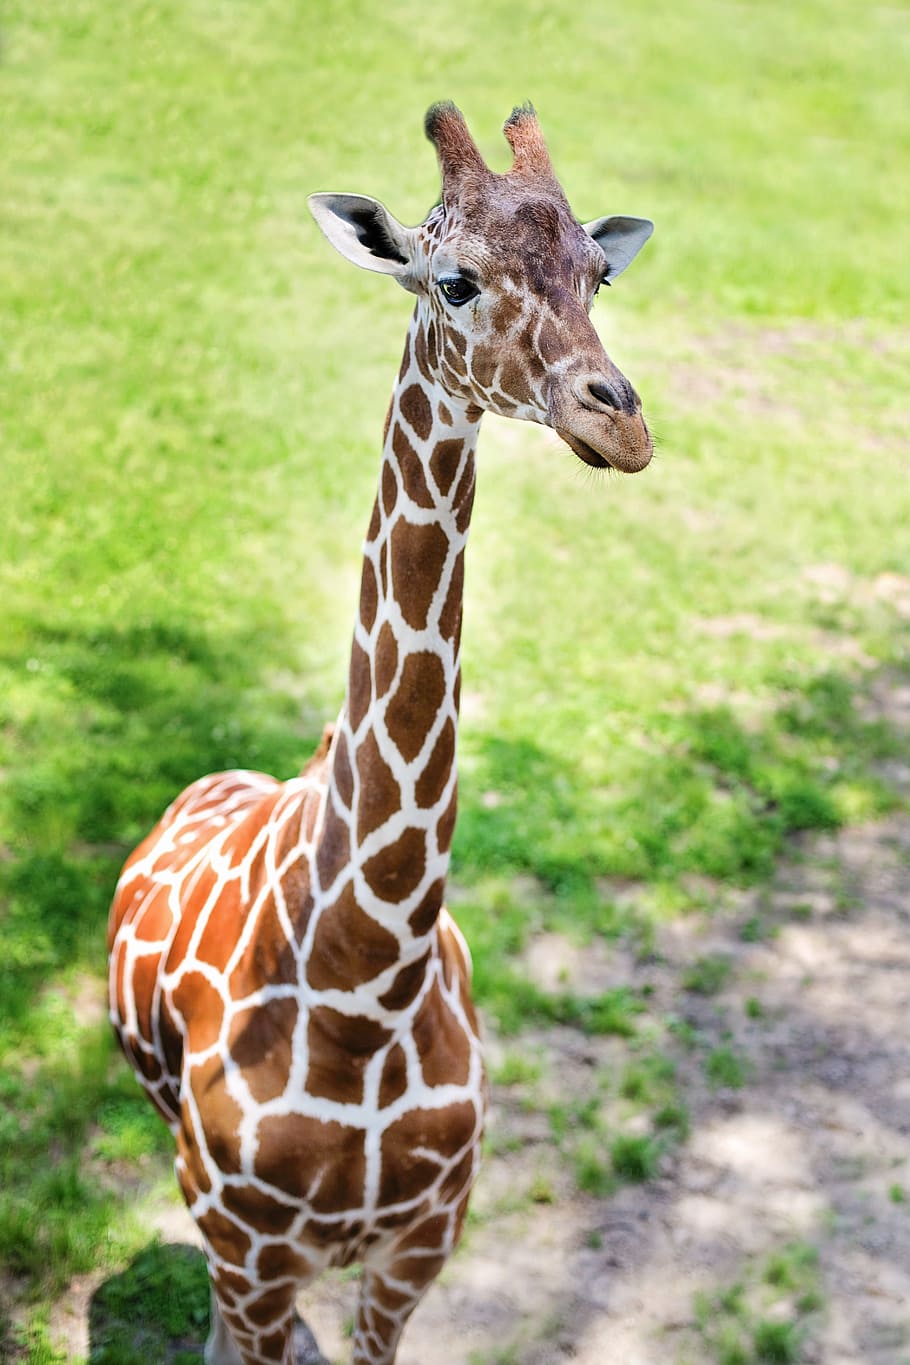 close-up photo, brown, white, giraffe, green, grass field, baby giraffe, zoo, baby, animal